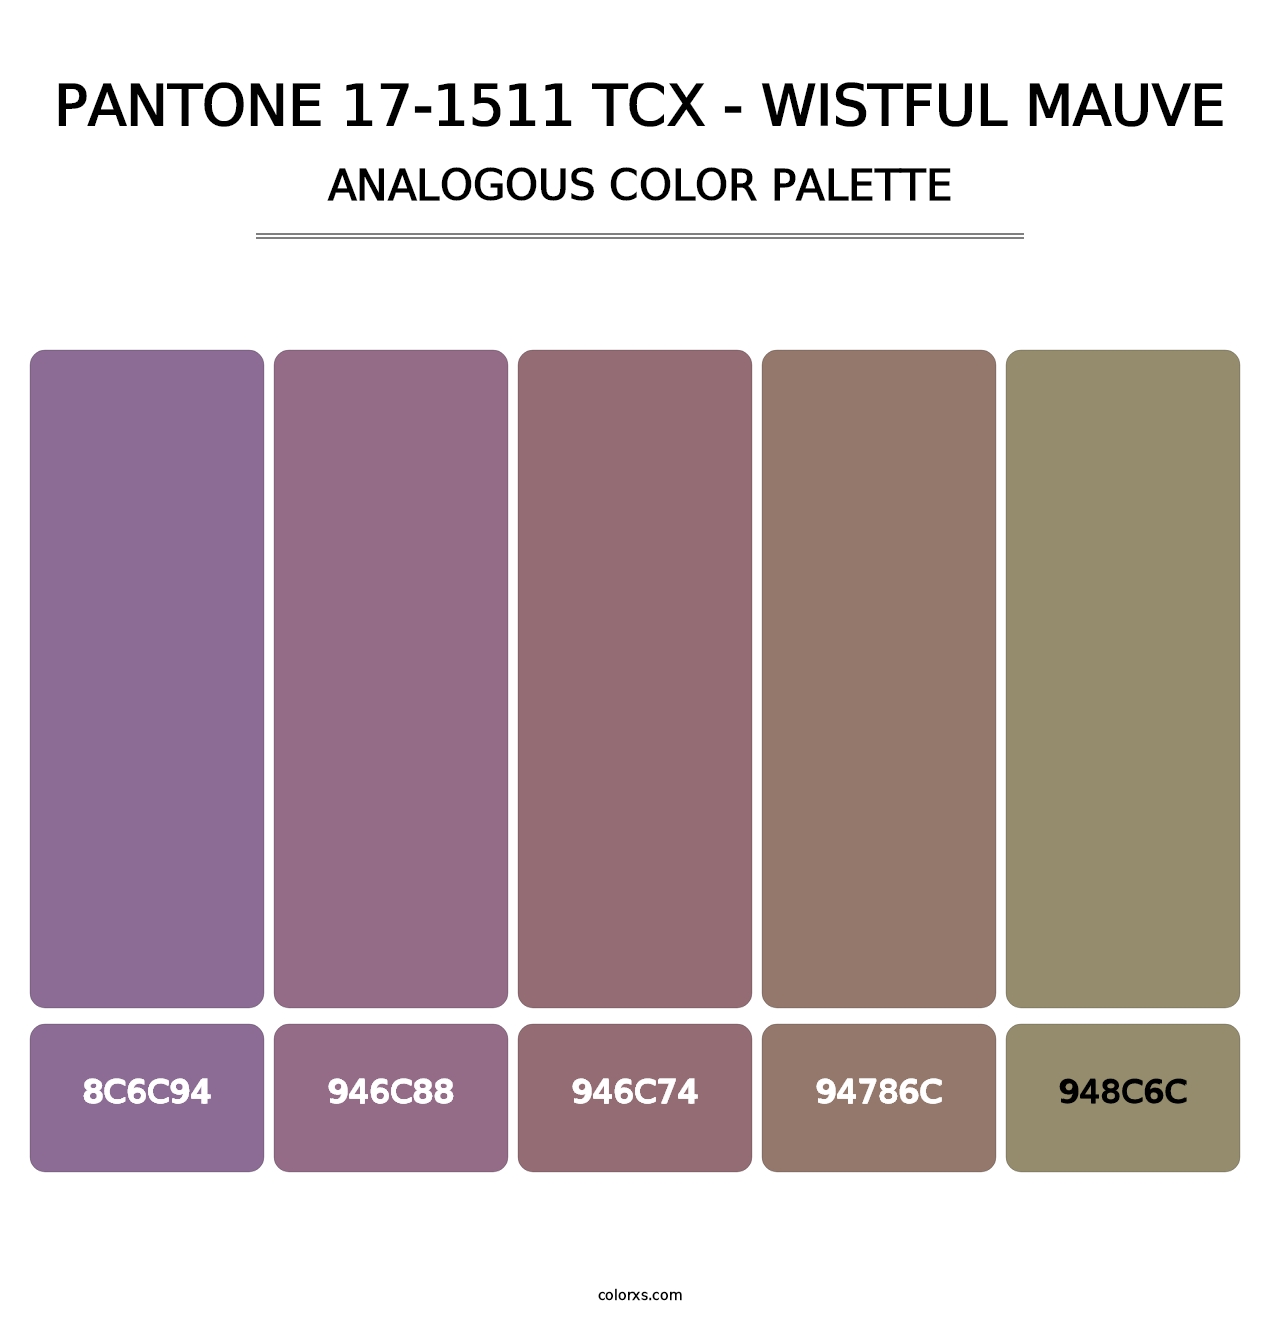 PANTONE 17-1511 TCX - Wistful Mauve - Analogous Color Palette